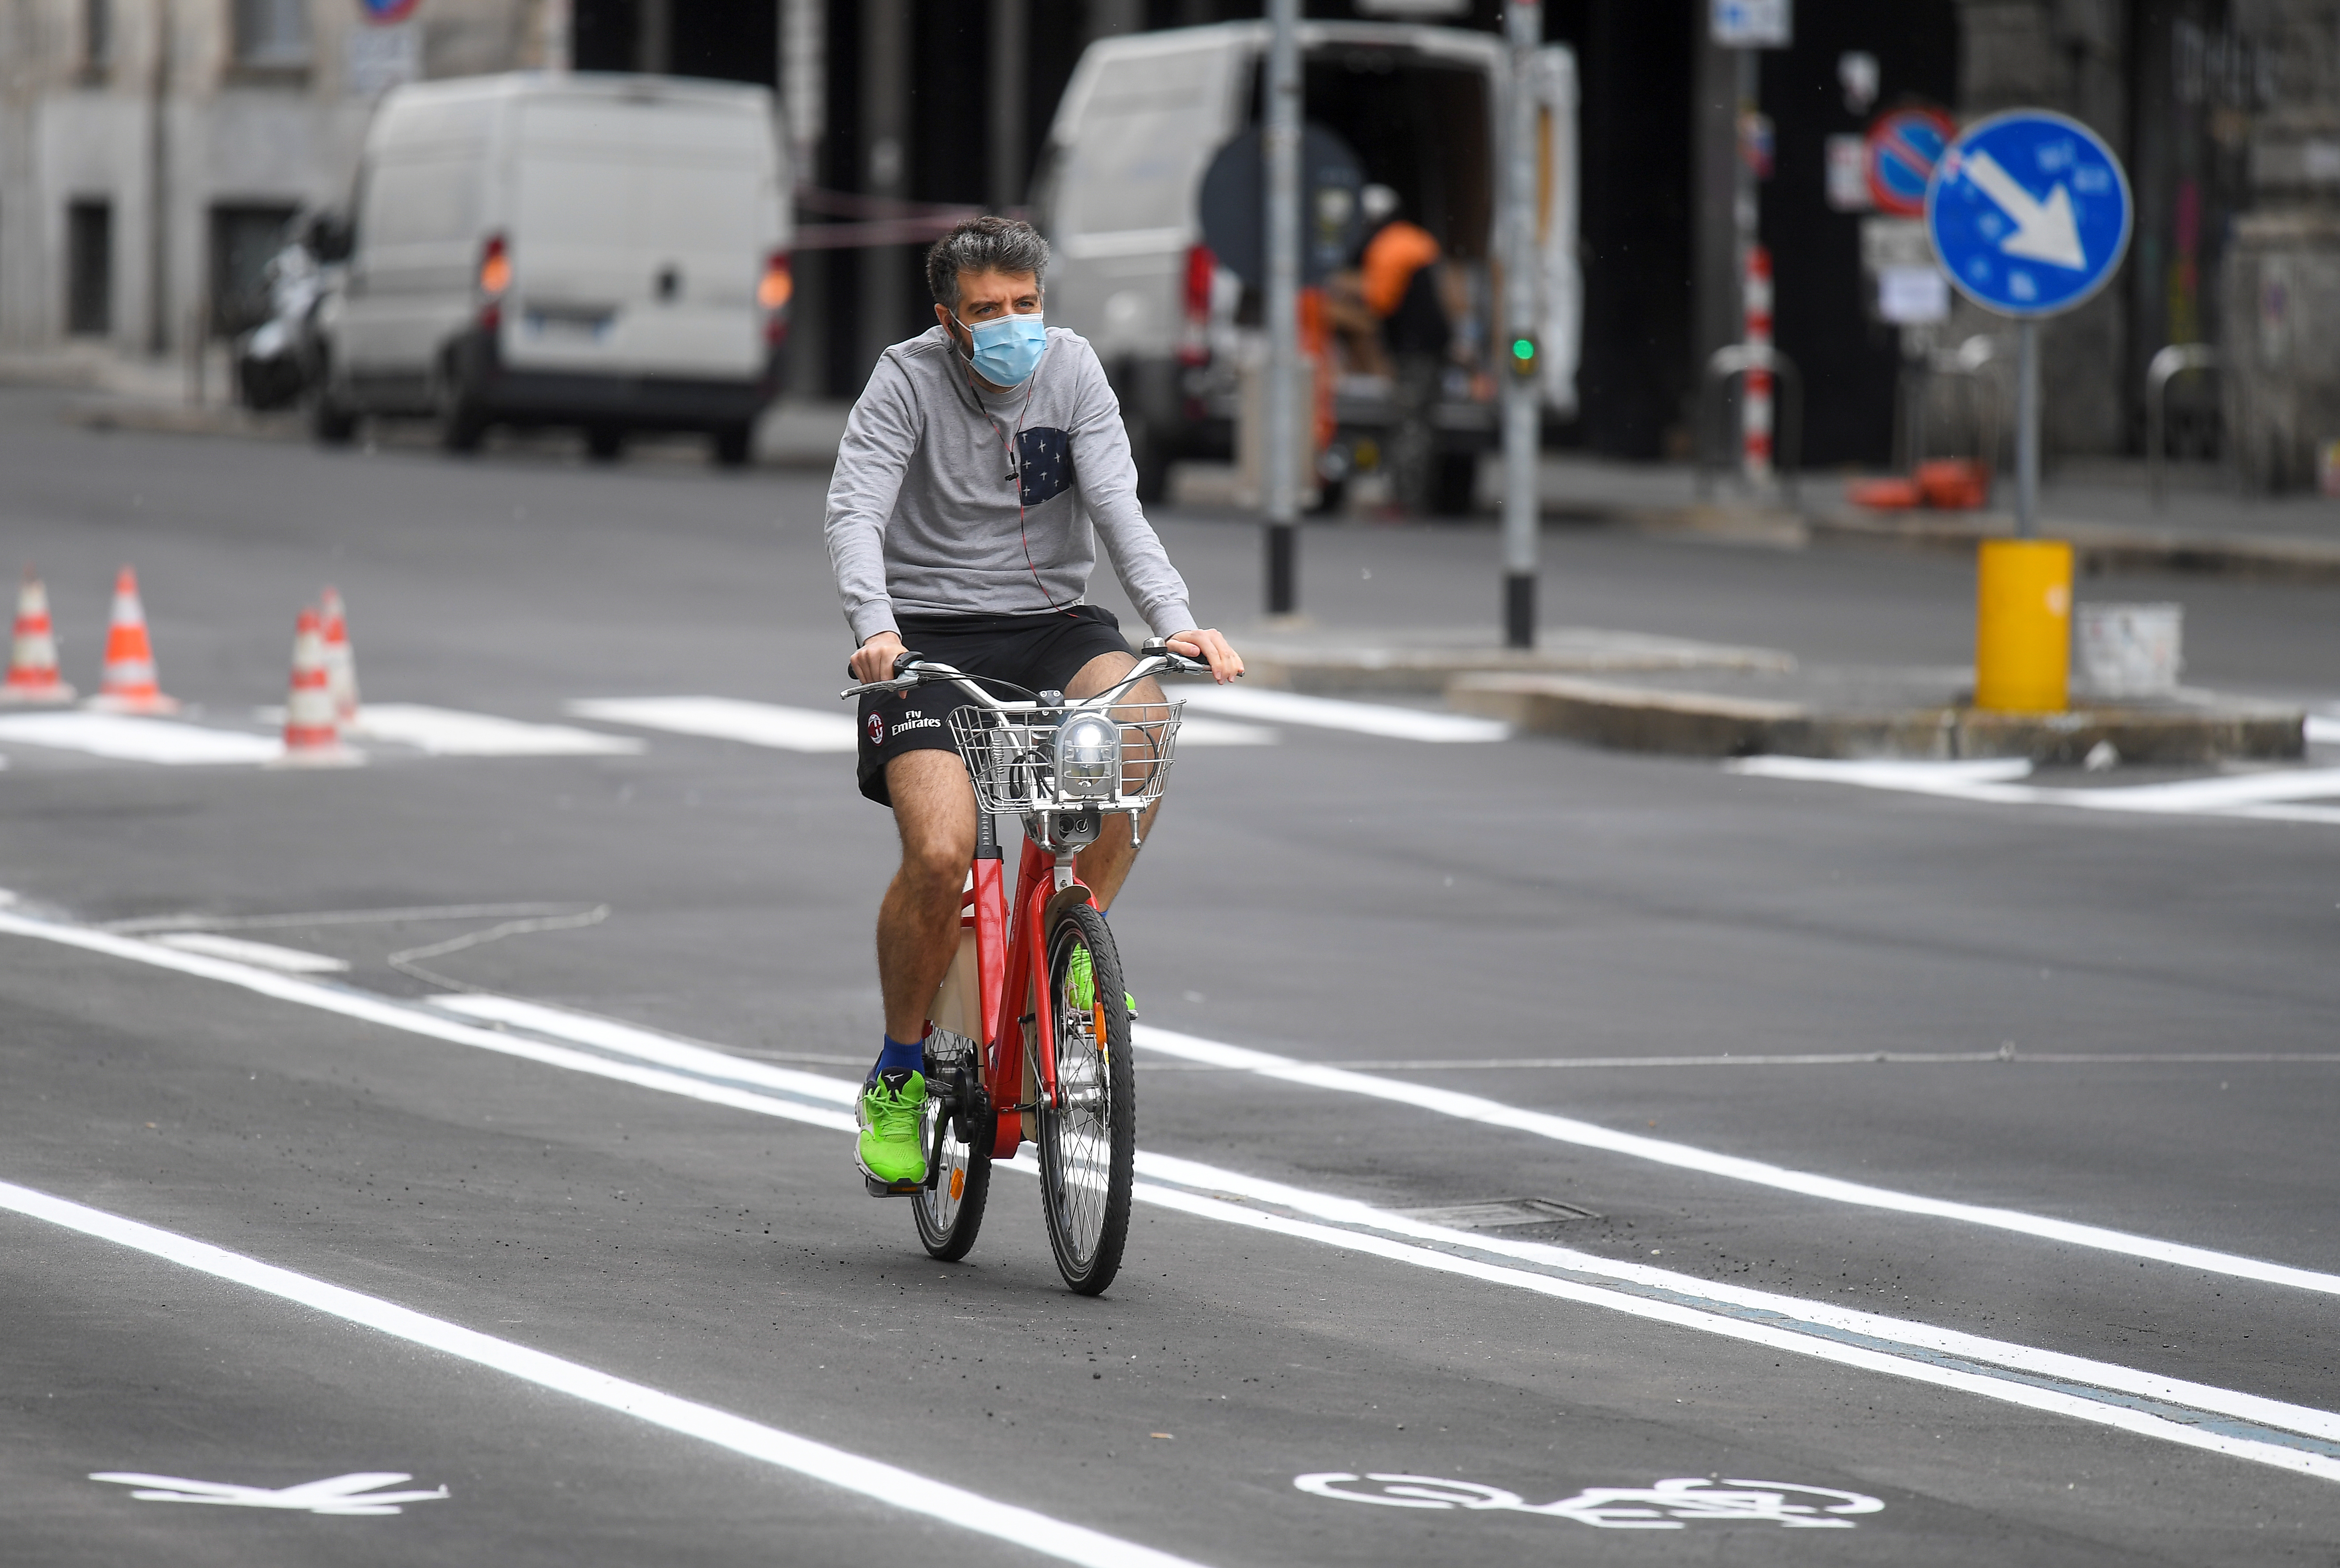 El uso de la bicicleta se promueve como una práctica sustentable que no contribuye a la contaminación del aire (REUTERS/Daniele Mascolo)